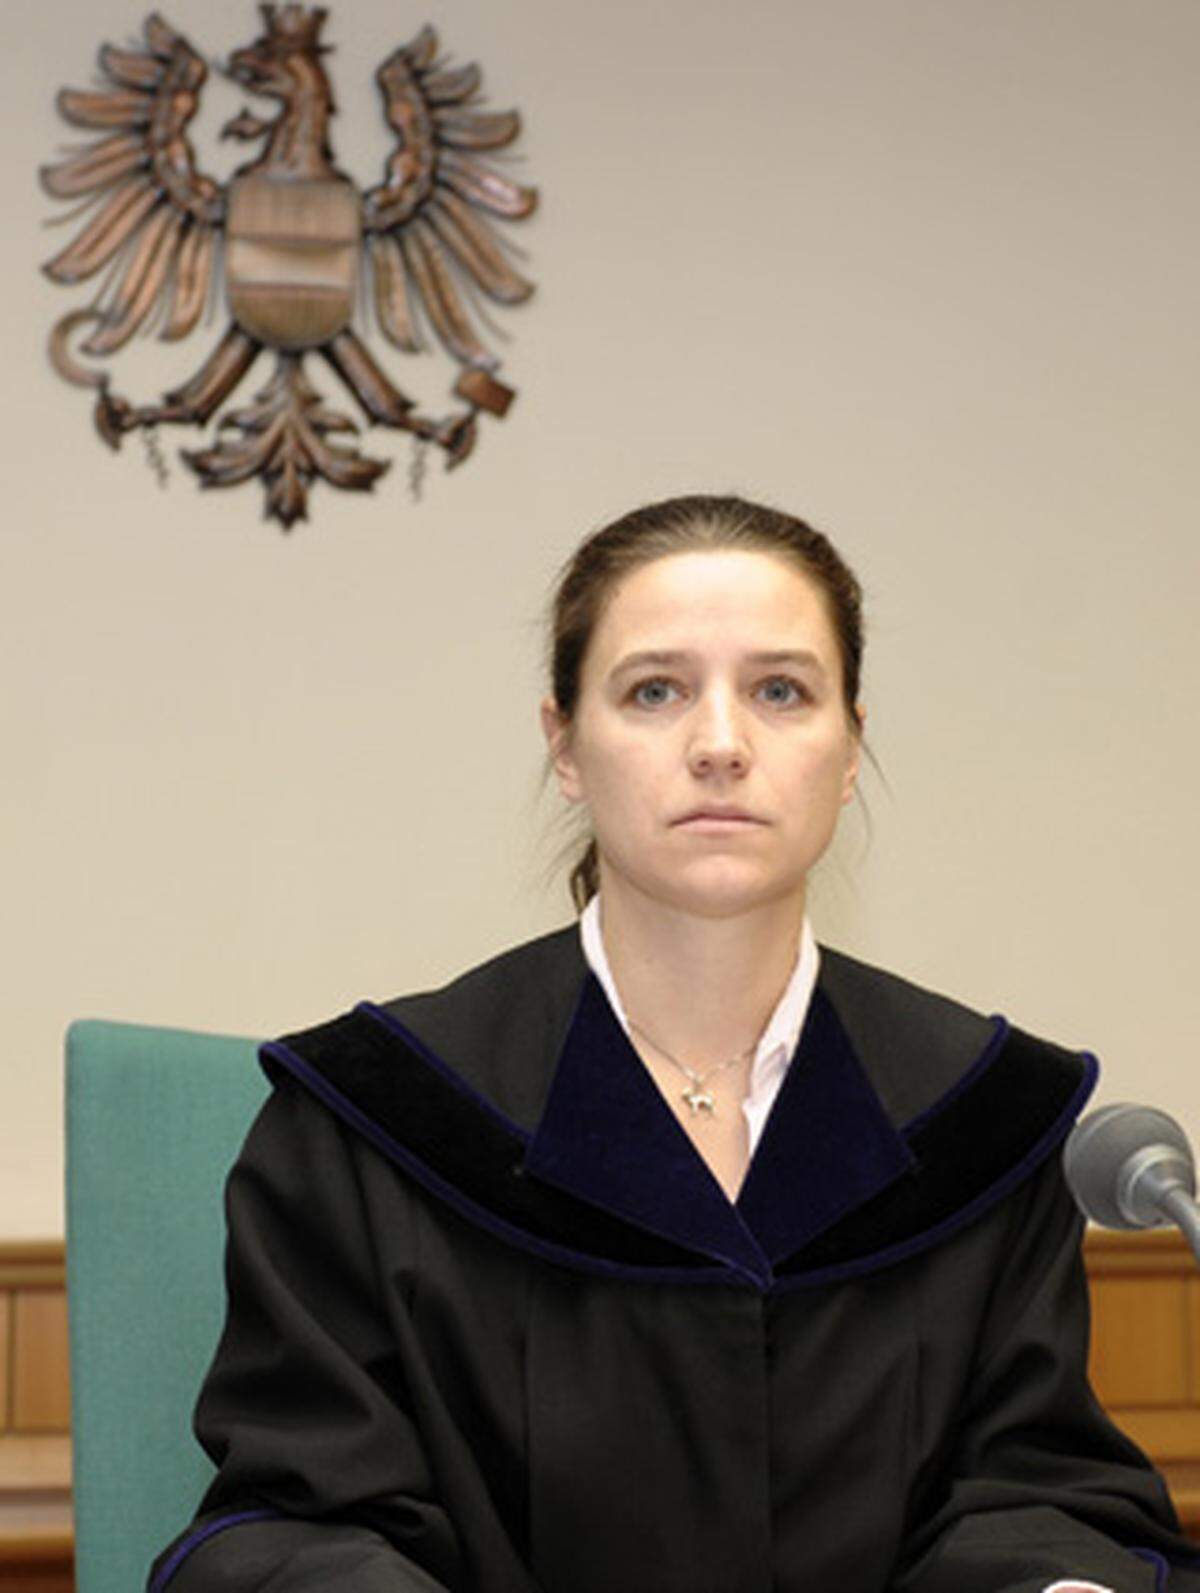 Mit 74 Prozent stehen Richter in Österreich hoch im Vertrauen. Die Justiz in anderen europäischen Ländern ist nicht so vertrauenswürdig: Europaweit trauen nur 47 Prozent den Richtern